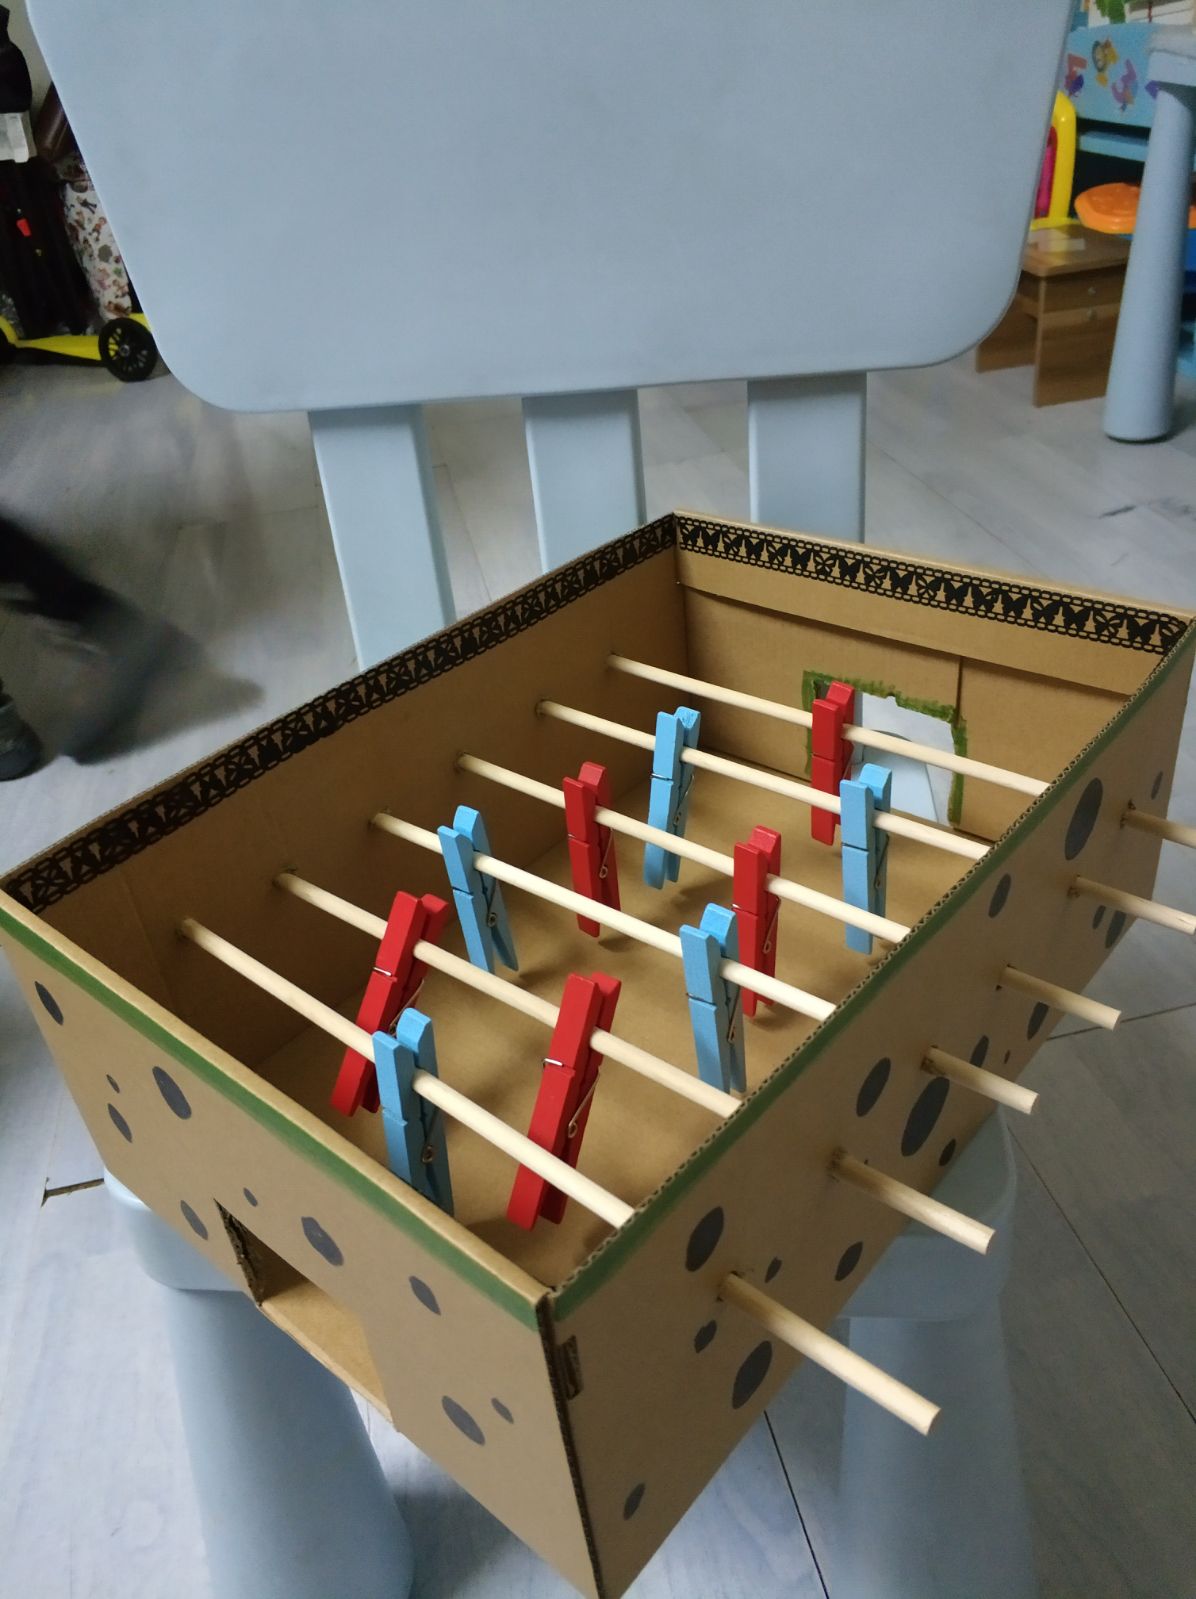 幼儿废旧物品手工制作 足球机手工教具 幼儿DIY玩具 纸盒手工玩具